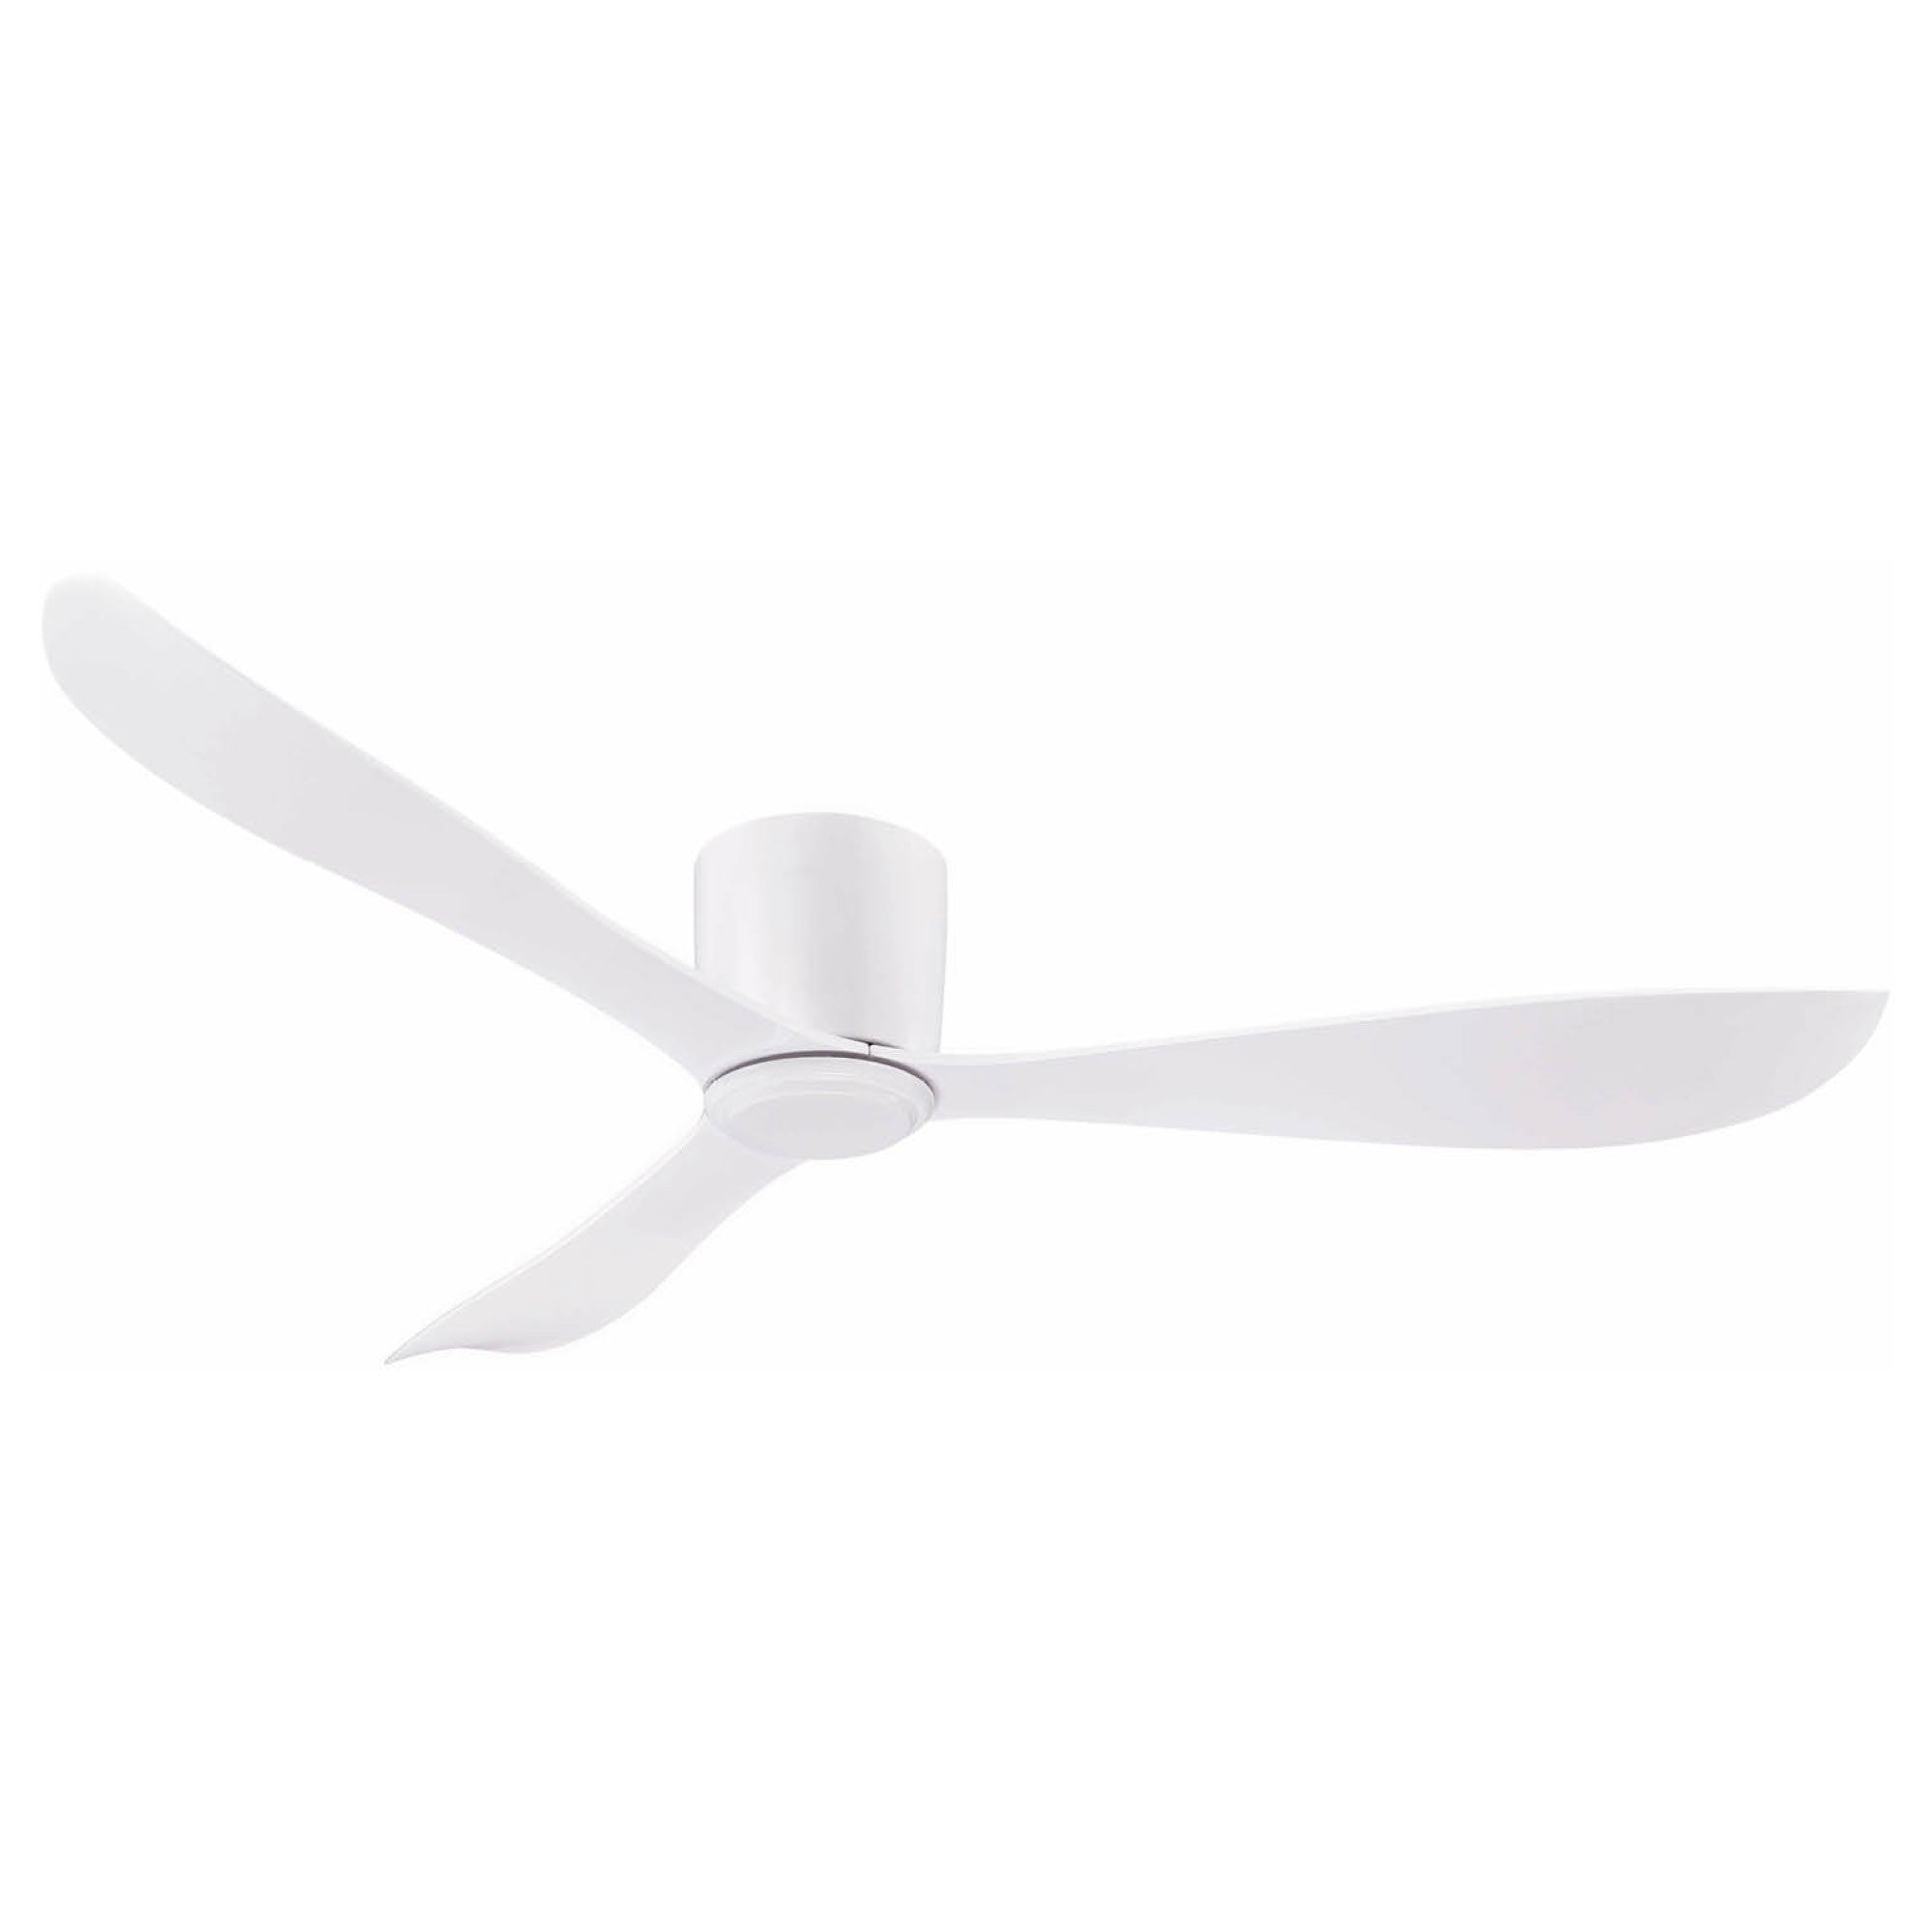 Instinct low profile ceiling fan White